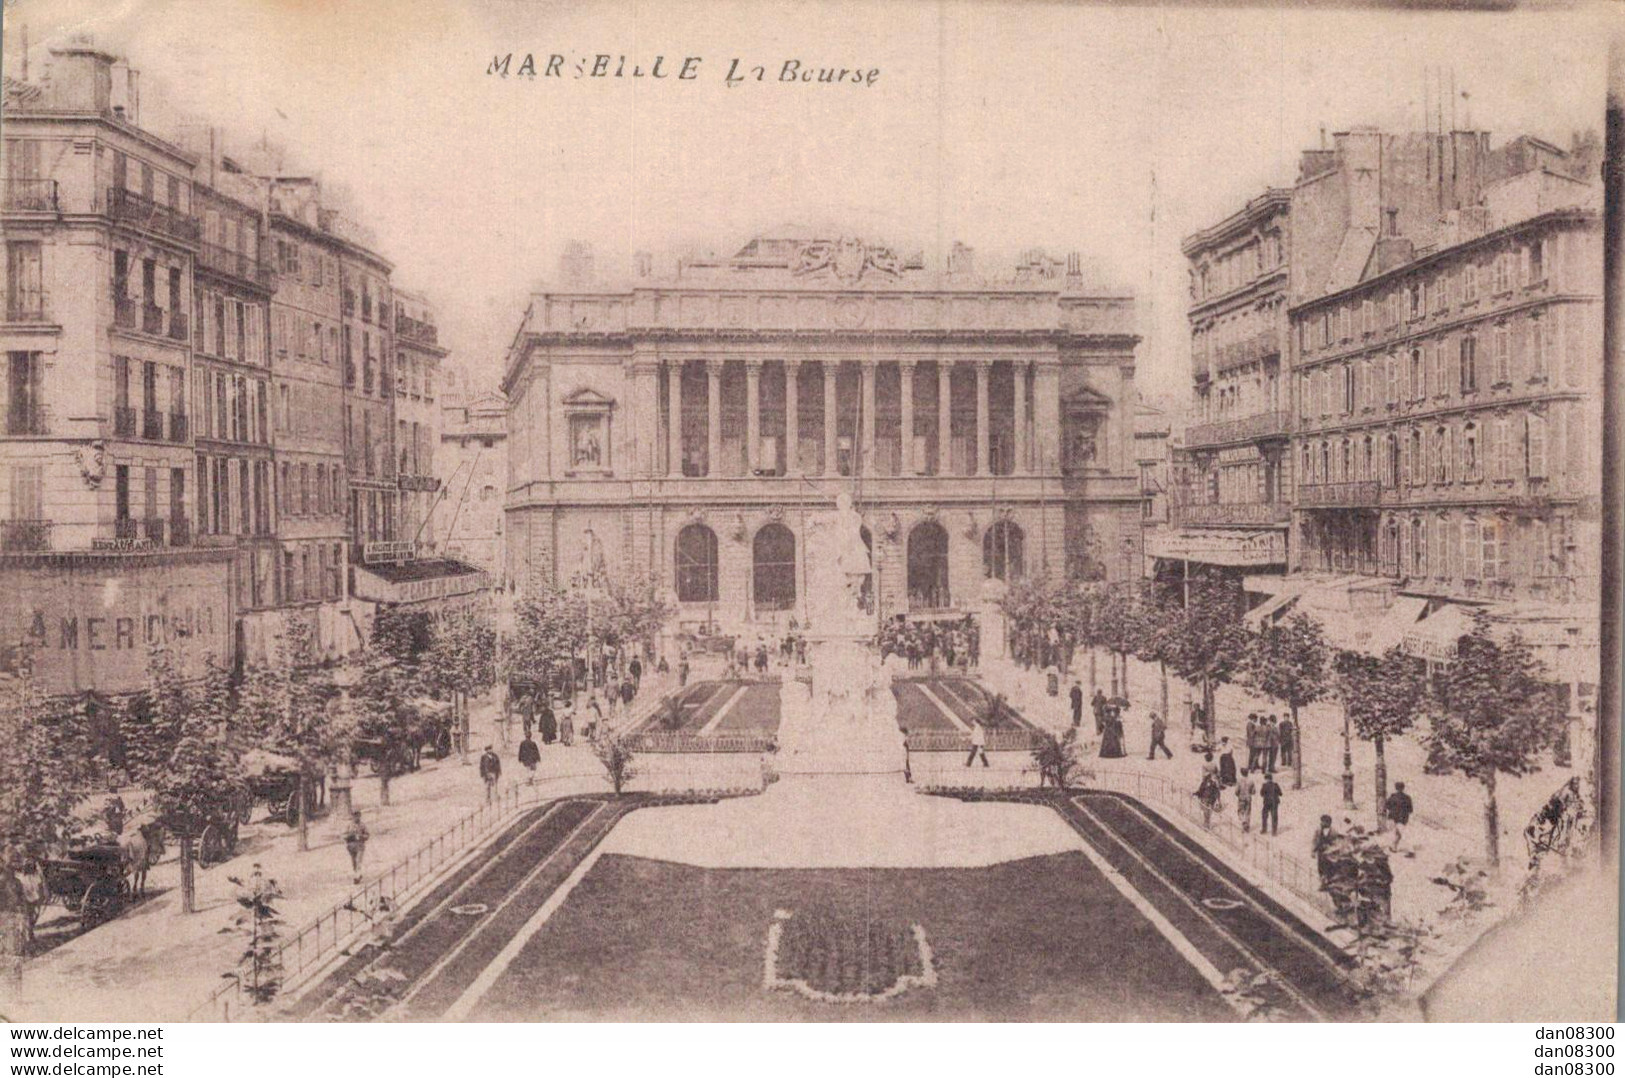 13 MARSEILLE LA BOURSE - The Canebière, City Centre